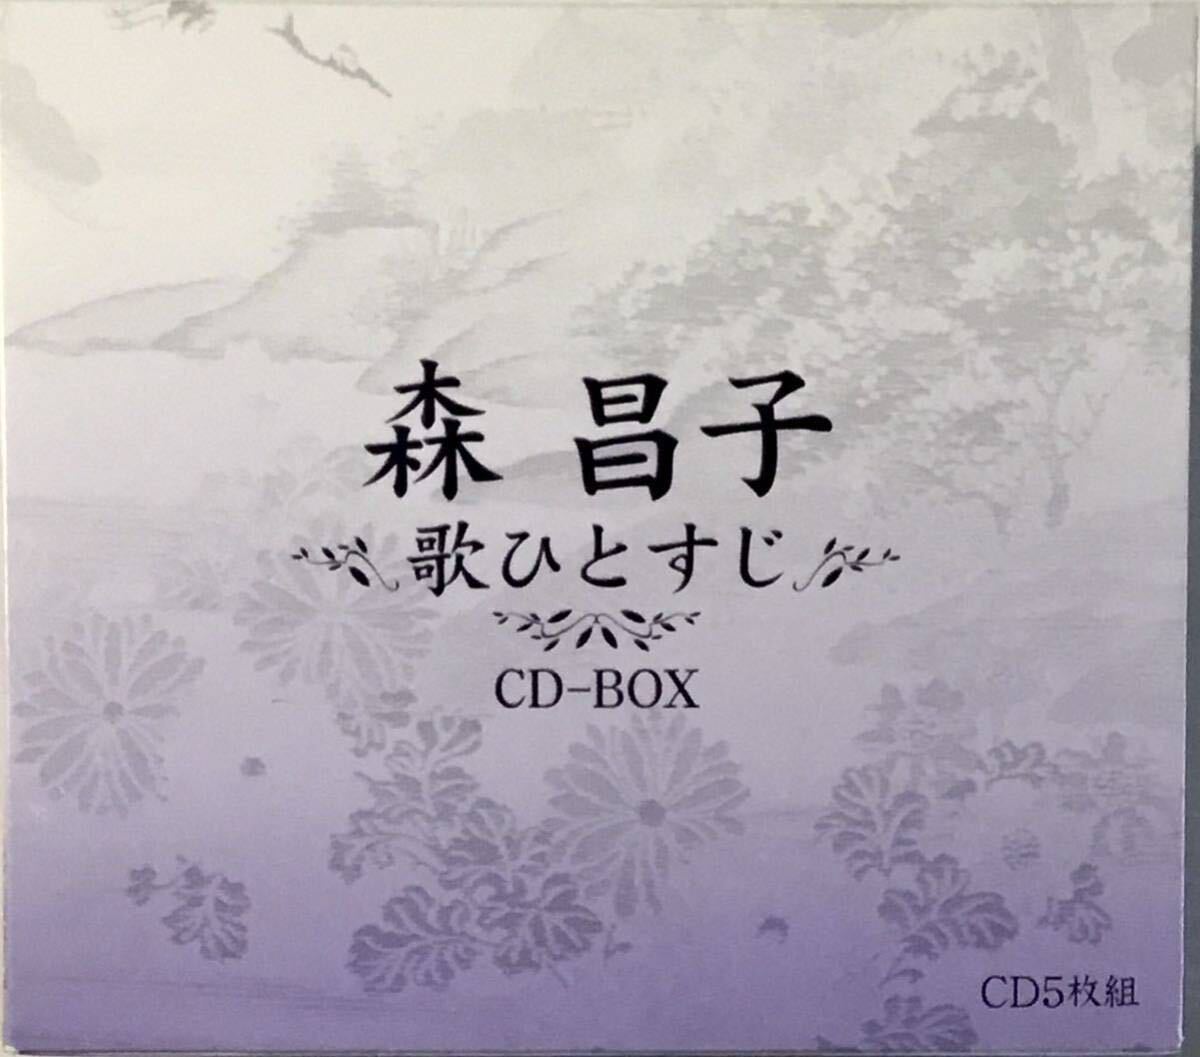 ☆ 森昌子 歌ひとすじ Alfred Hause Orchestra ビクター 5枚組 CD-BOXの画像1